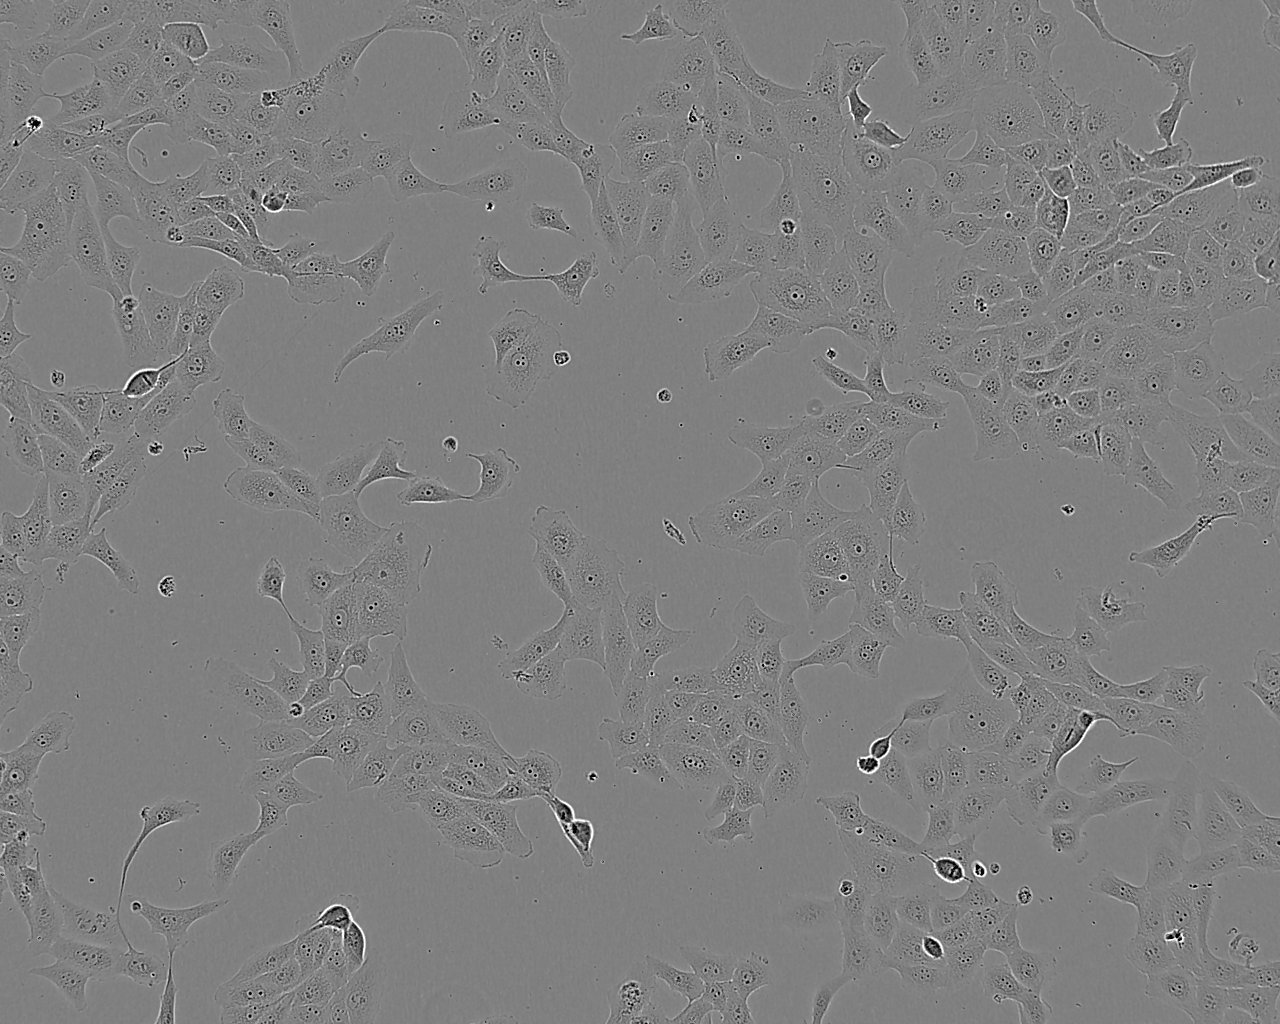 SV40 MES 13 小鼠肾小球系膜细胞系,SV40 MES 13